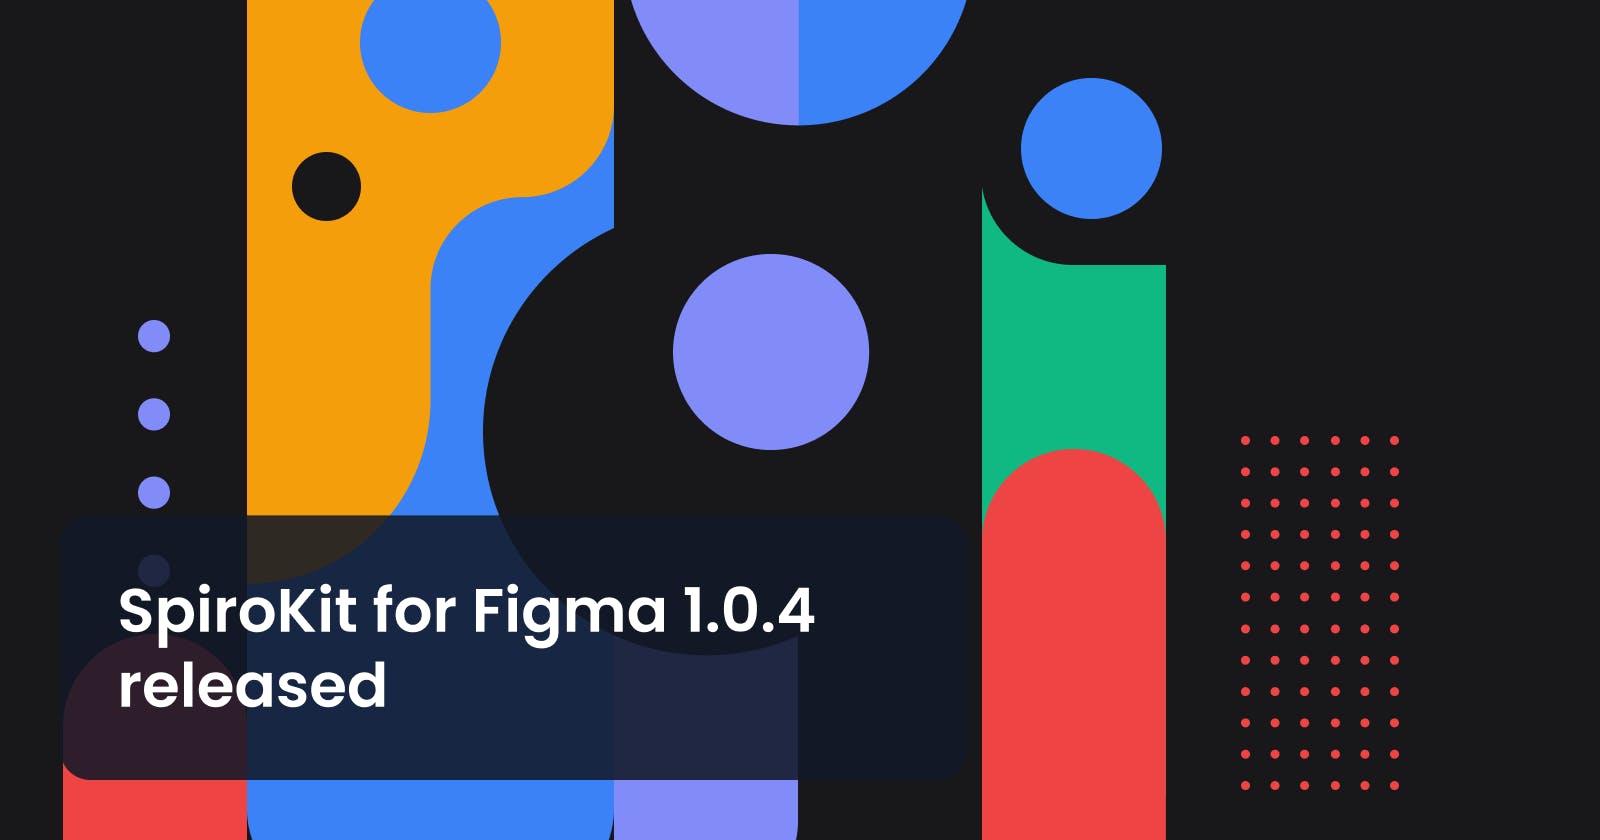 SpiroKit for Figma 1.0.4 released